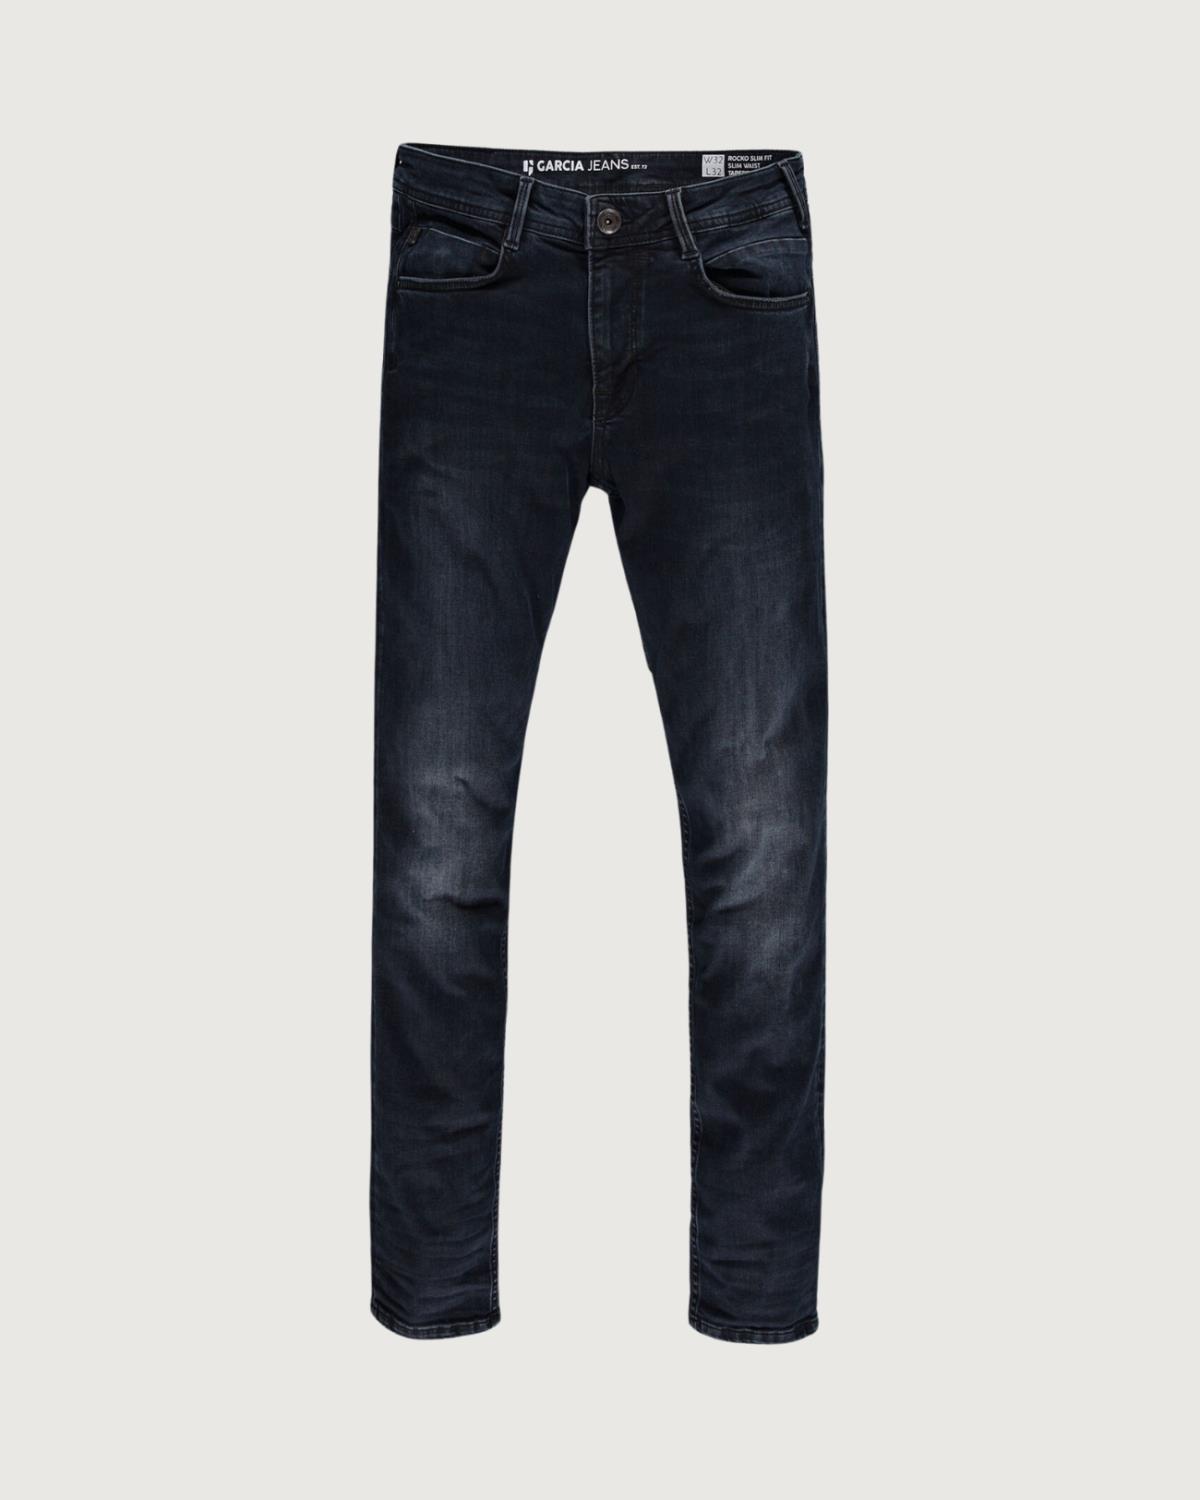 Rocko Slim Fit Jeans Dark Used 7500